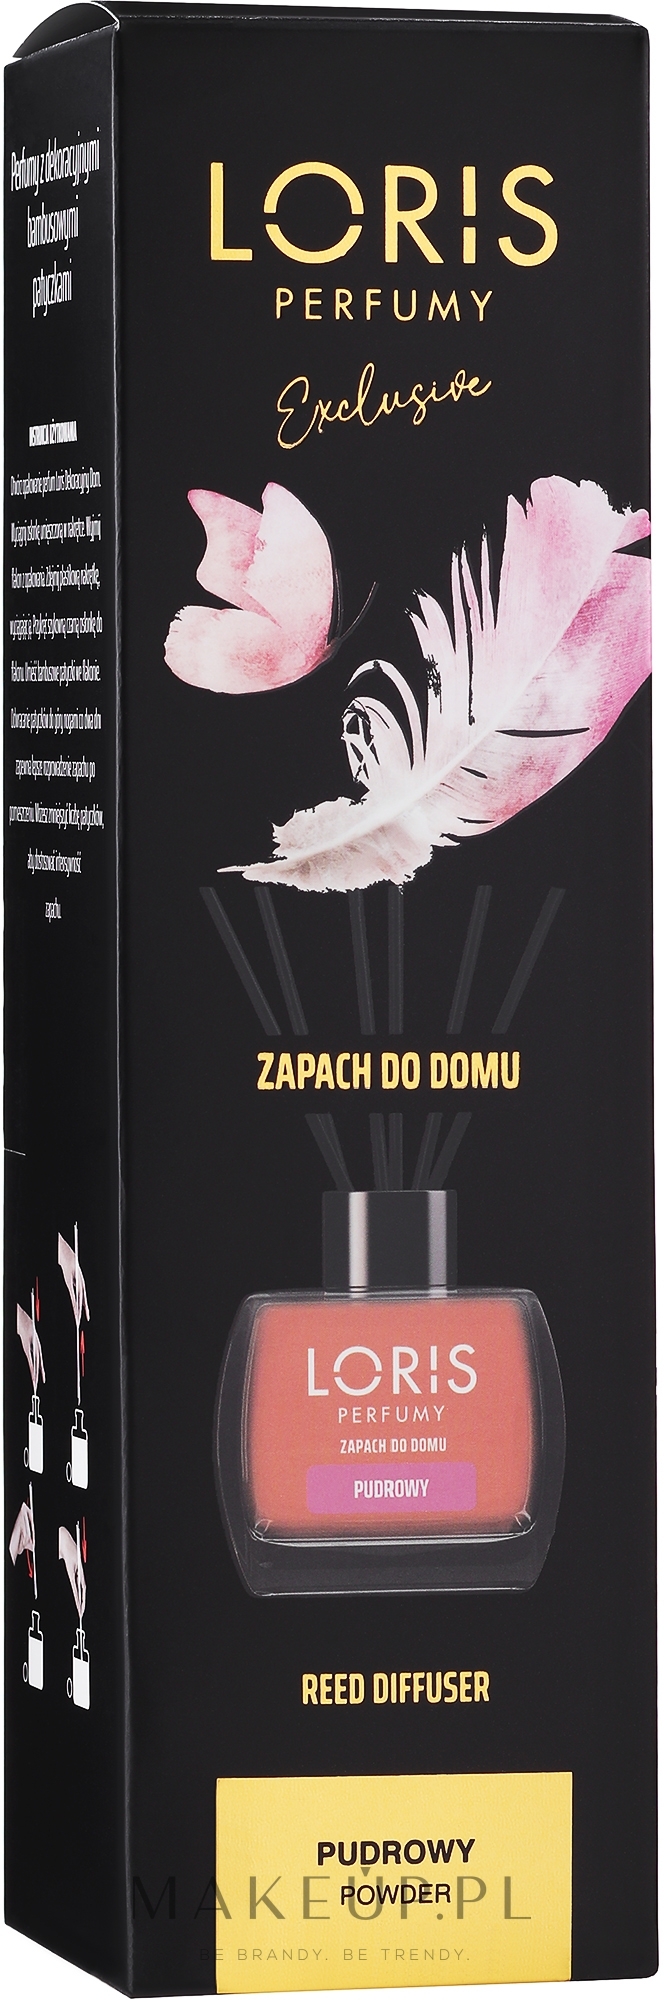 Dyfuzor zapachowy Powder - Loris Parfum Powder Reed Diffuser — Zdjęcie 120 ml